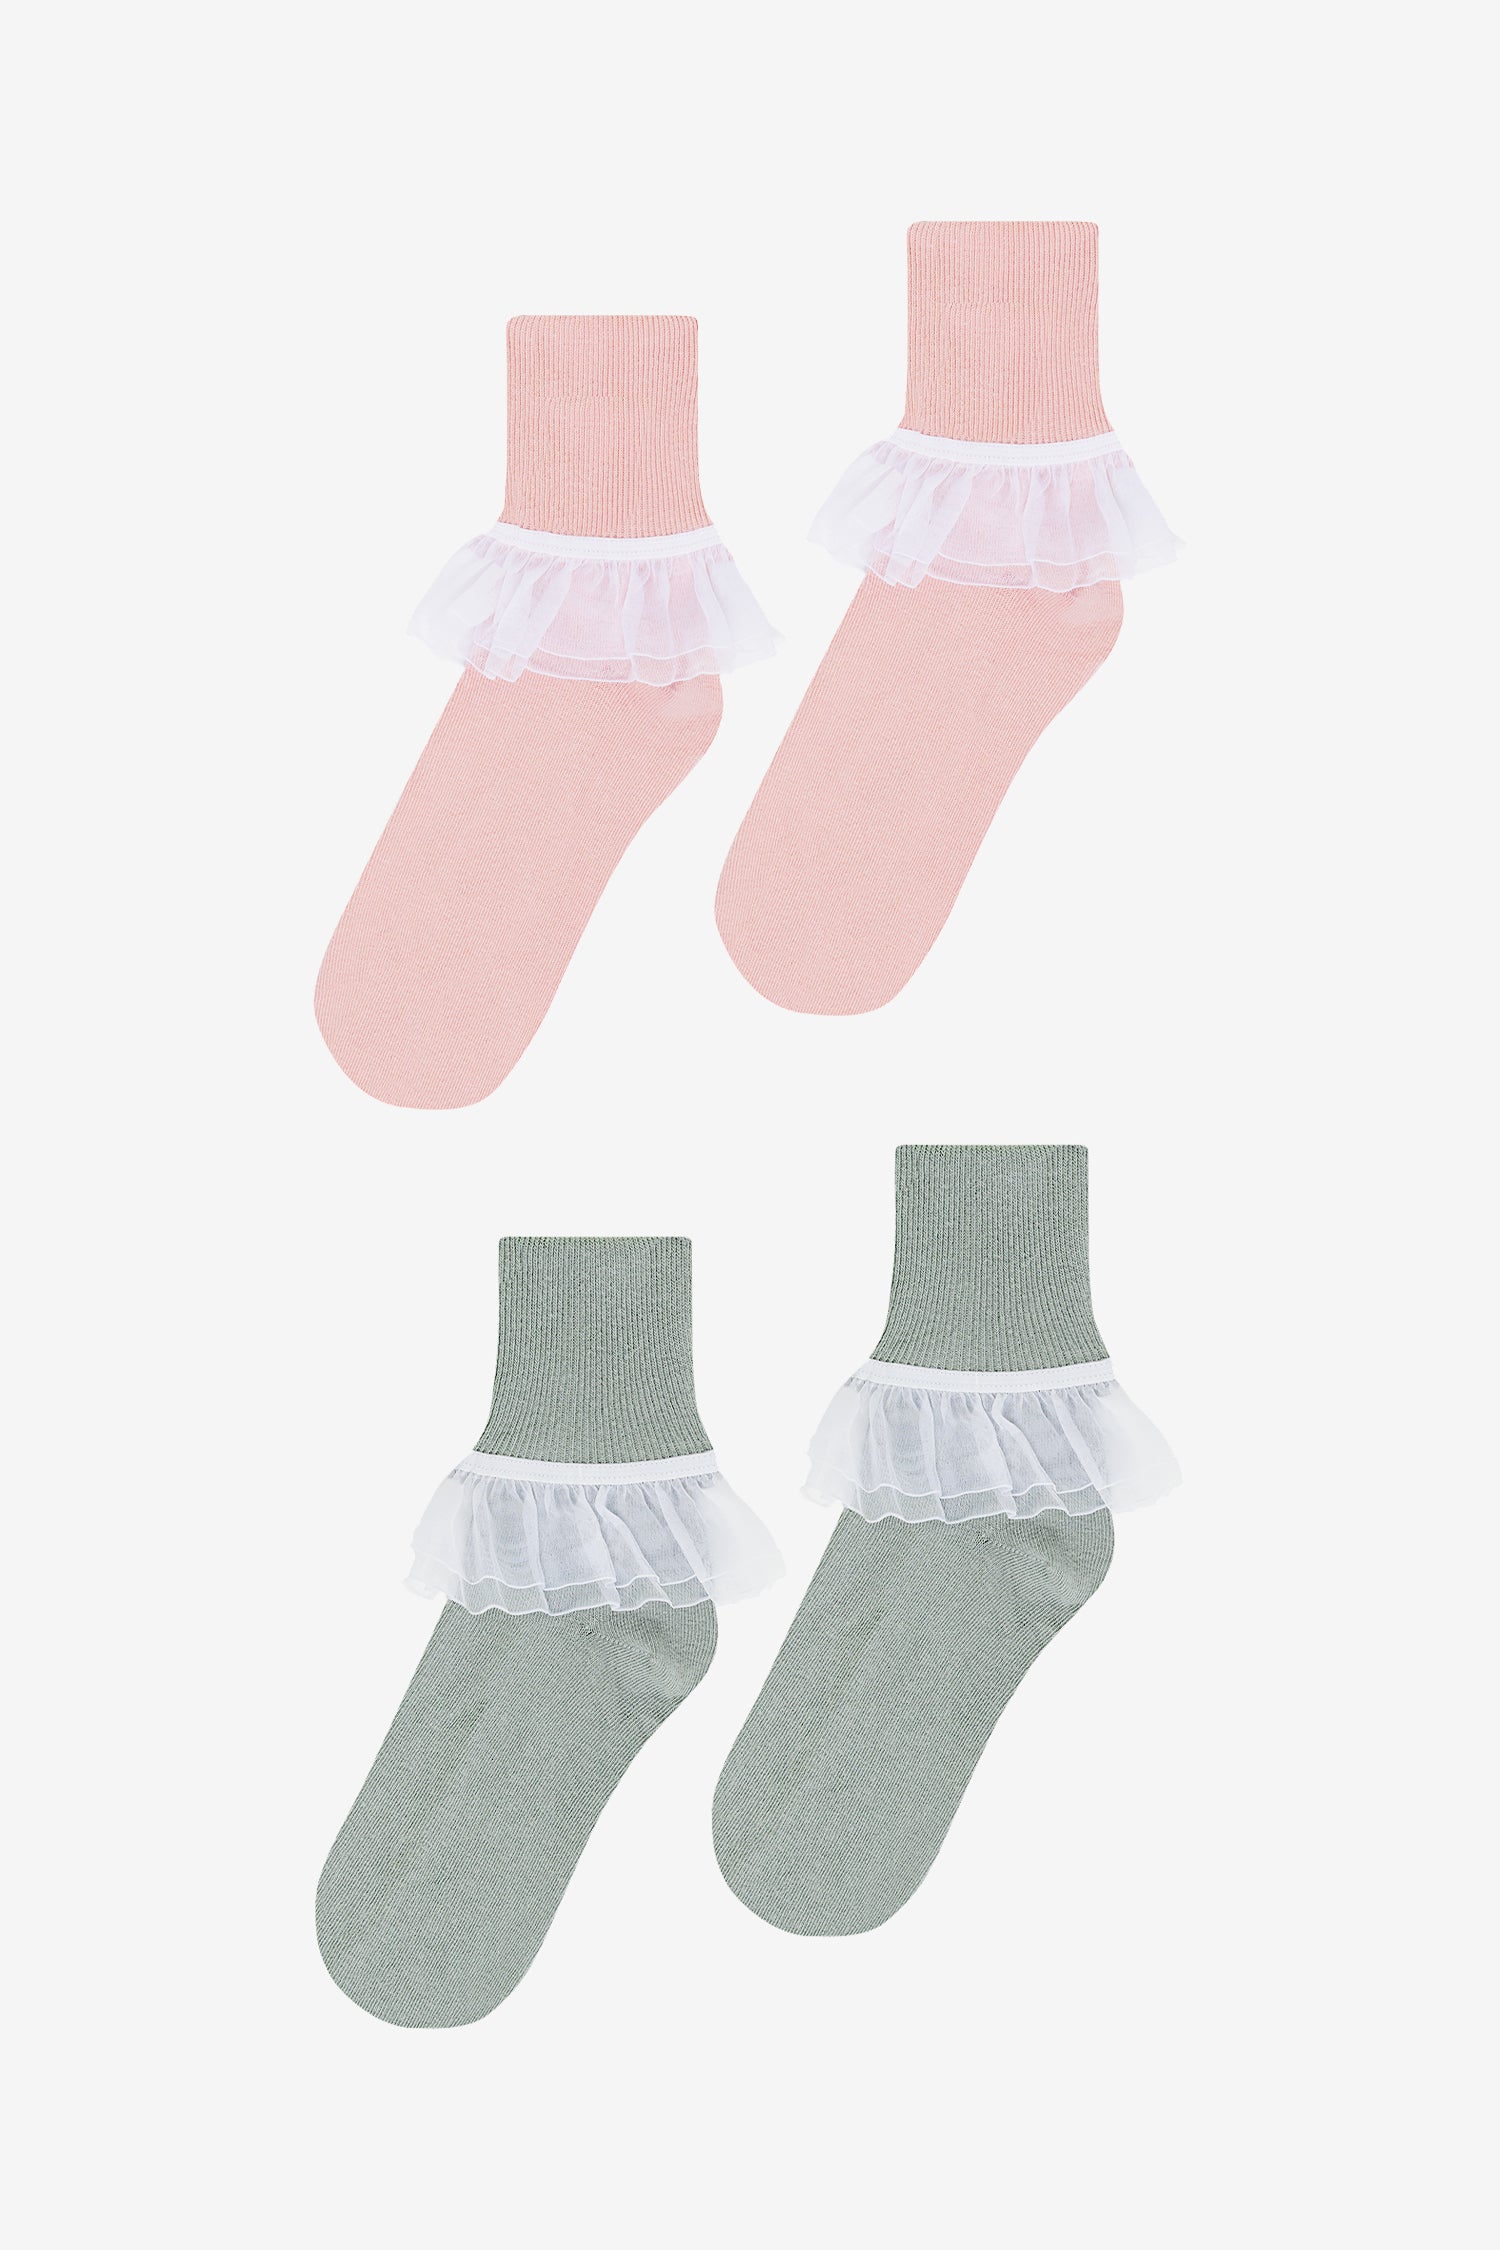 Women Accessories - Hosiery & Socks